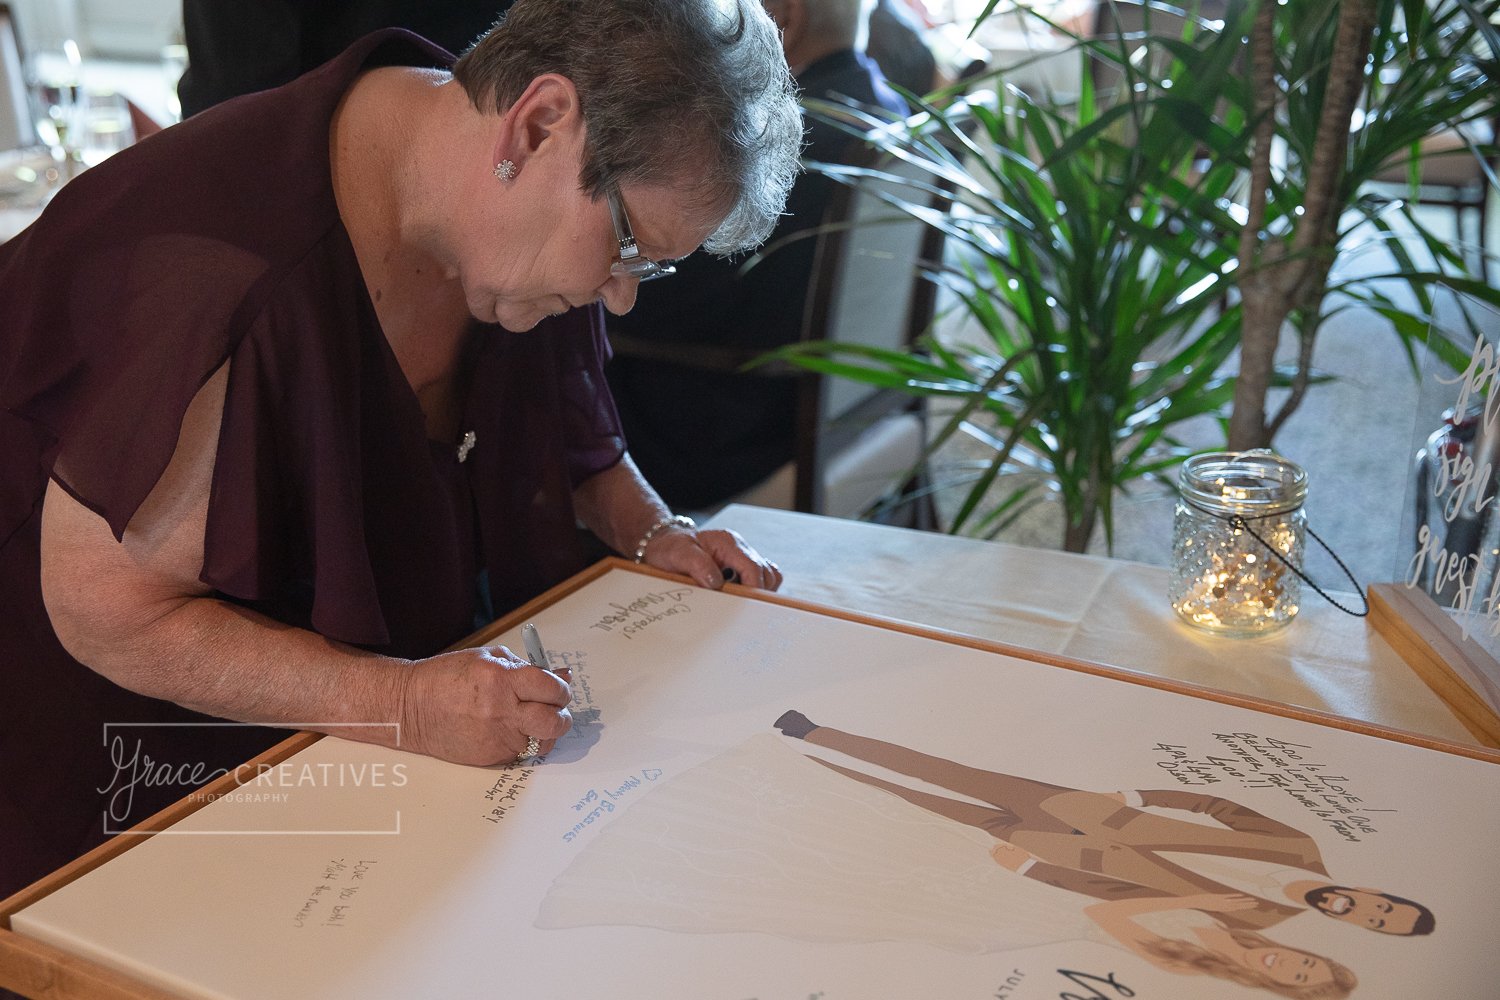 grandma signing a unique guest book illustration